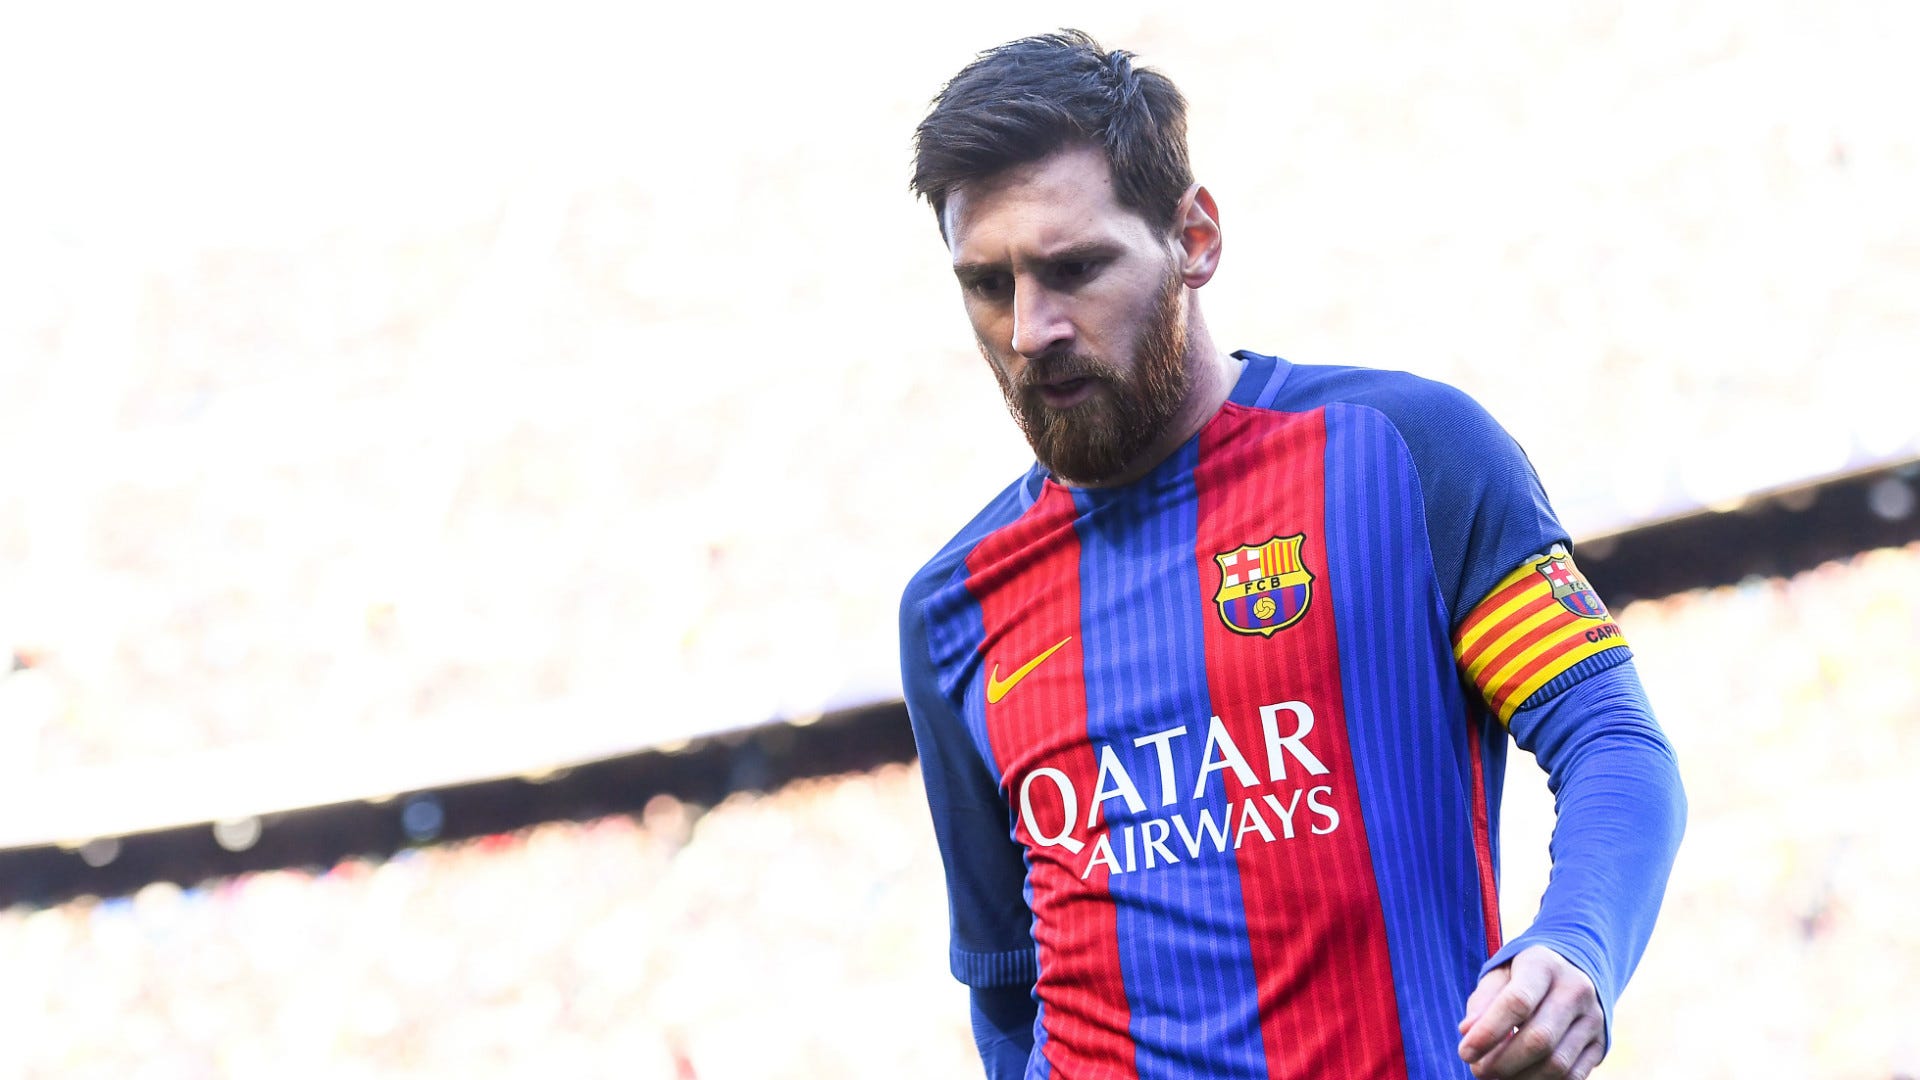 Cần lời khuyên để hiểu rõ hơn về việc chuyển nhượng Messi? Đừng bỏ qua những hình ảnh và thông tin hữu ích về sự ra đi đầy tranh cãi của \